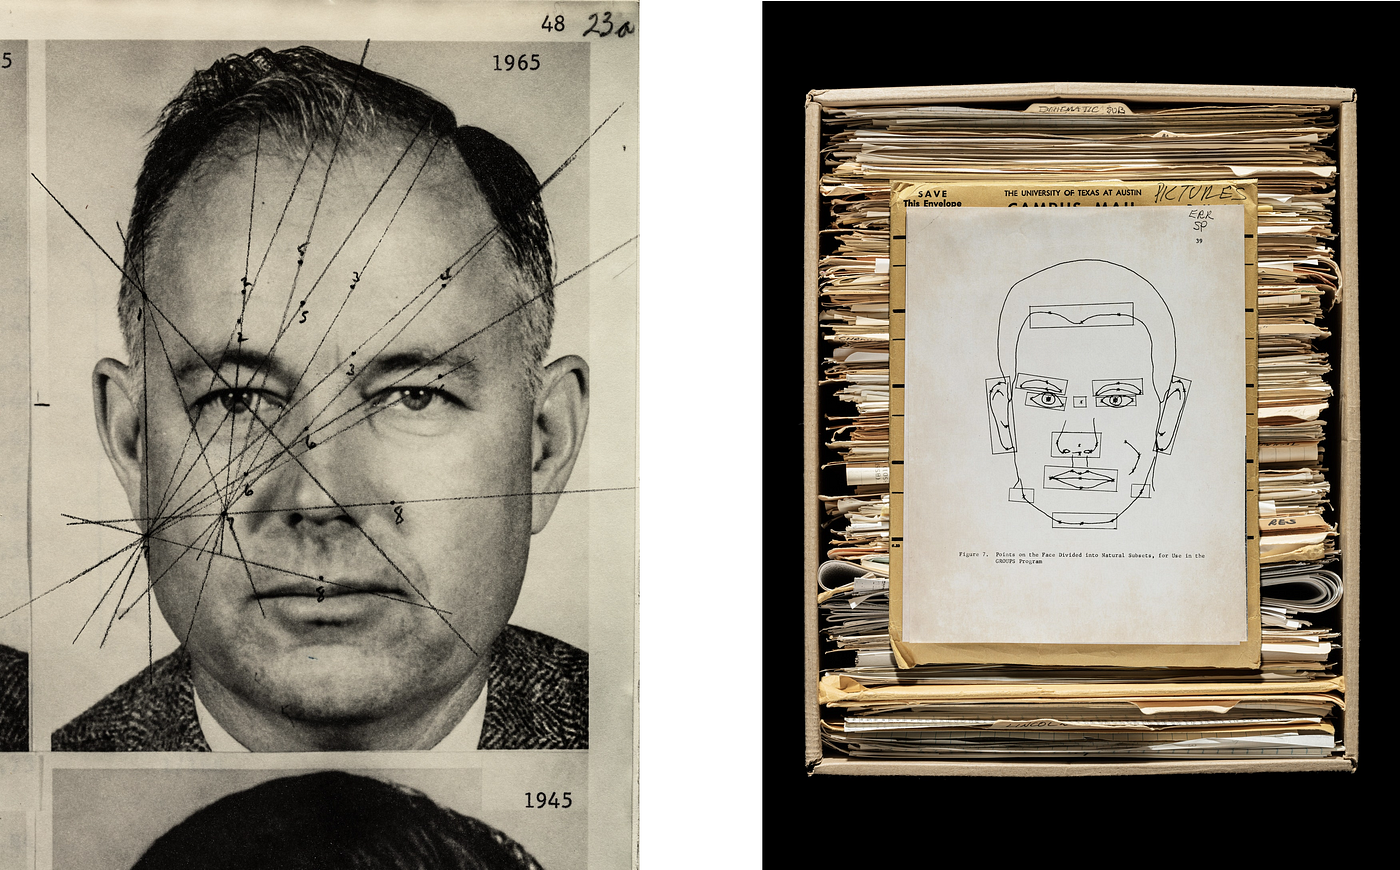 Пример специальной ручной разметки на фотографии Вуди Бледсо. Слева можно наблюдать рисованный макет его лица, необходимый для тестирования системы.